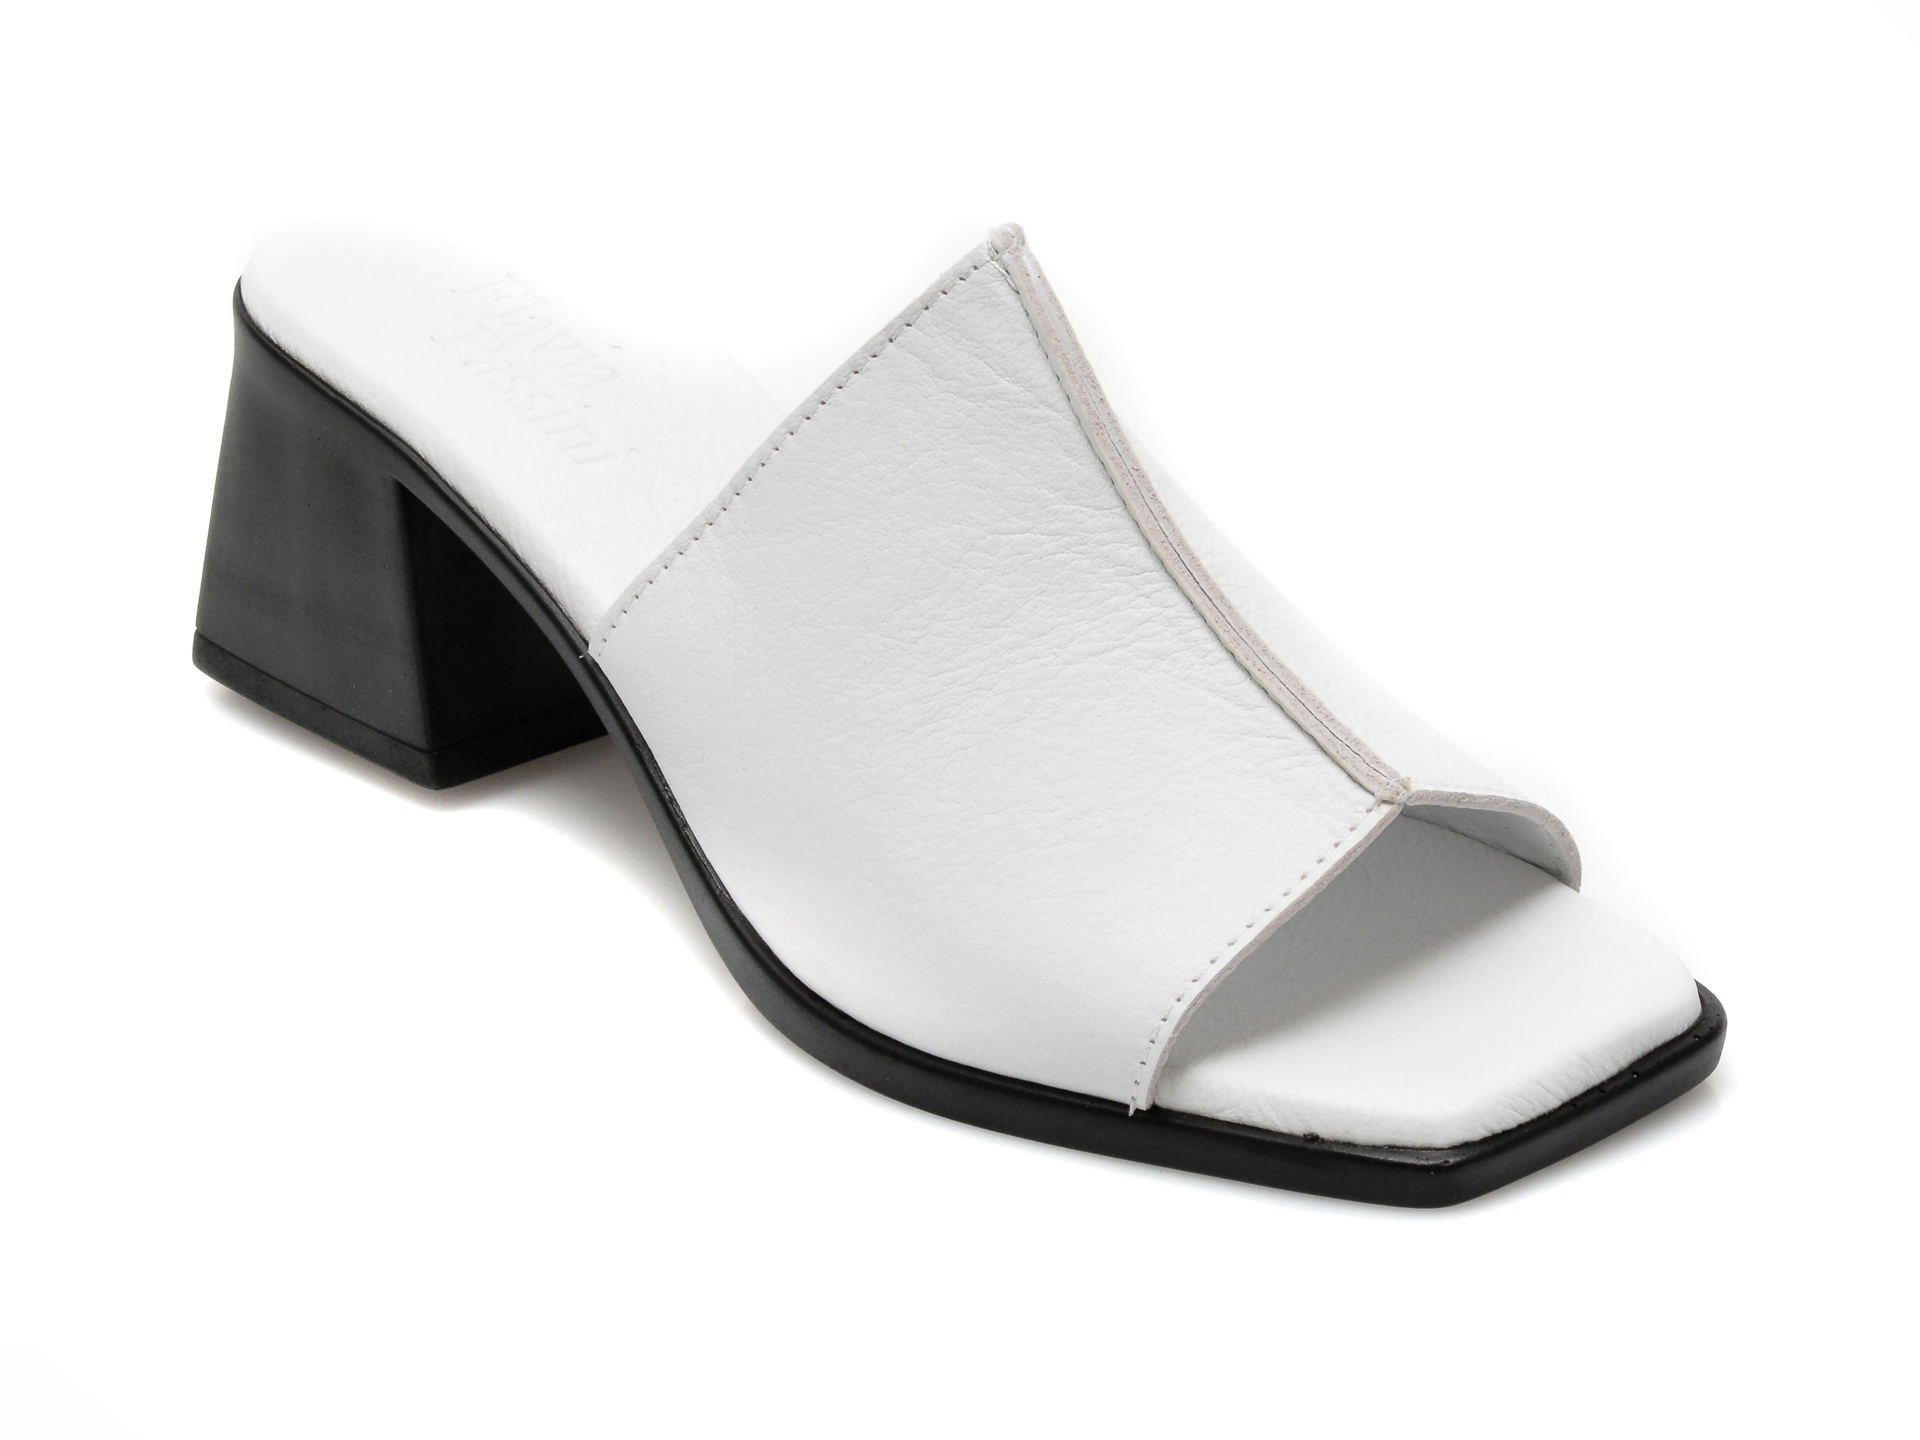 Papuci FLAVIA PASSINI albi, 7007, din piele naturala Flavia Passini imagine 2022 13clothing.ro